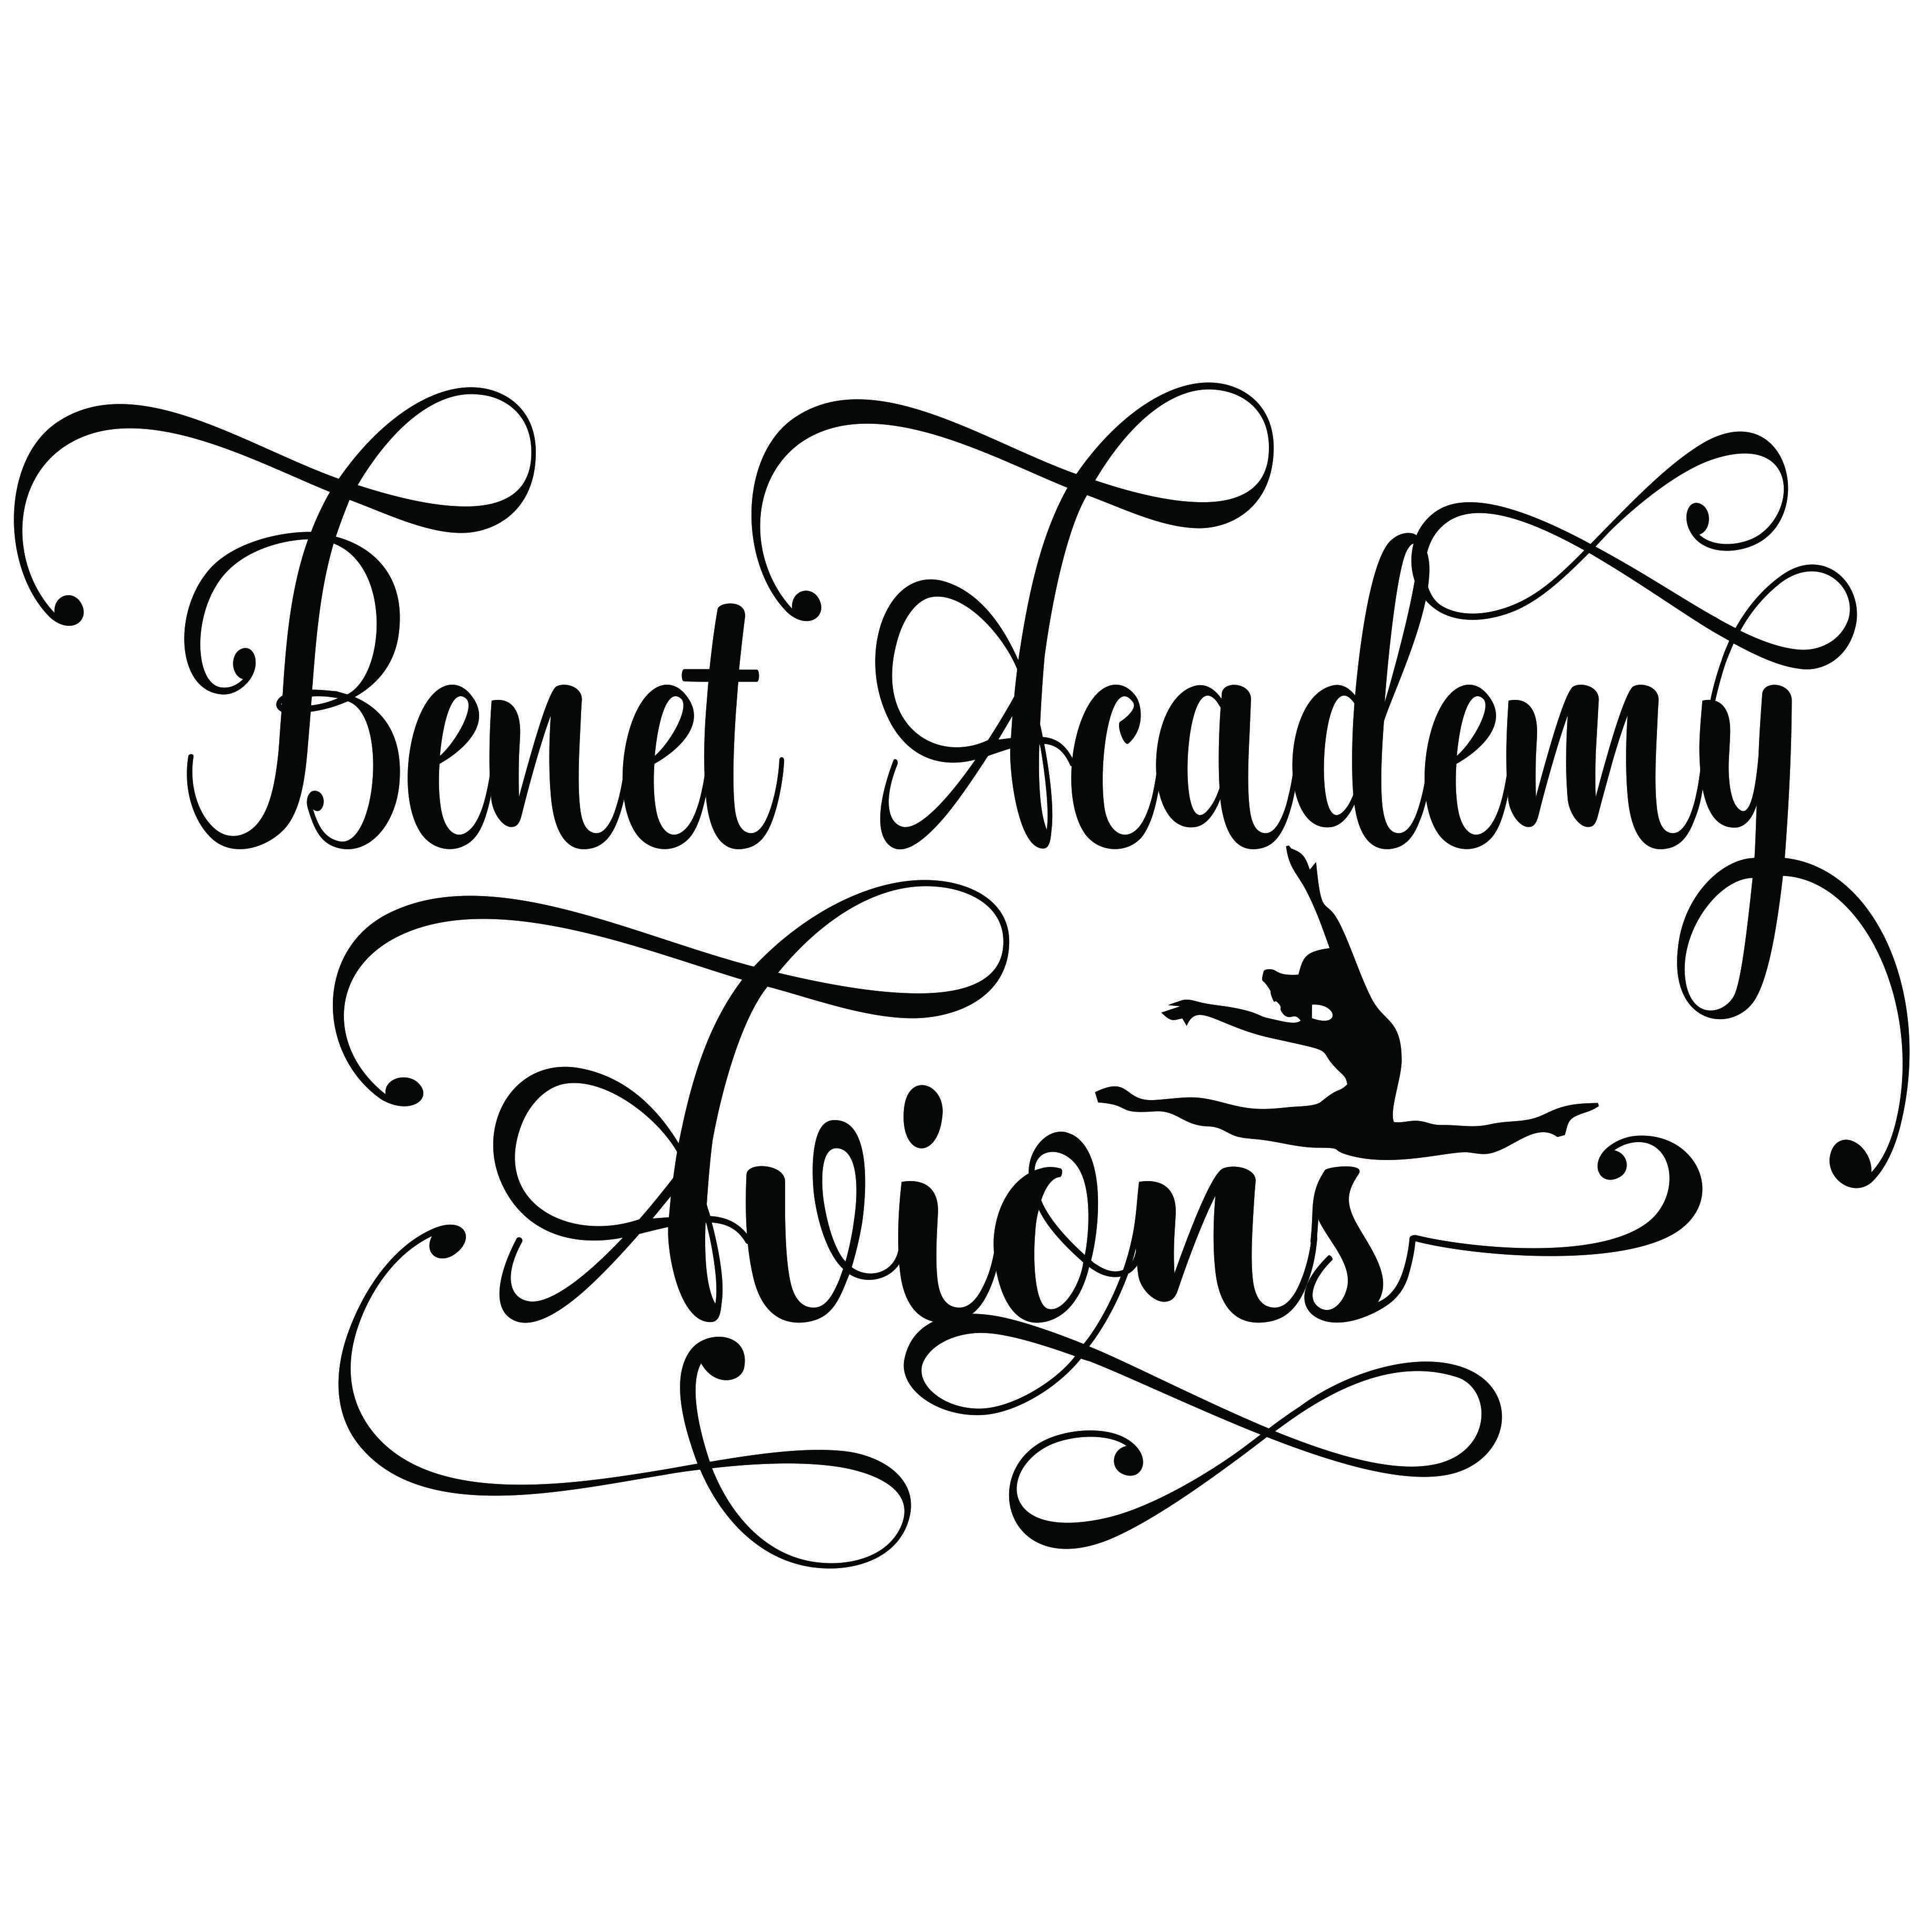 Benet Academy Avions Dance-Beckys-Boutique.com